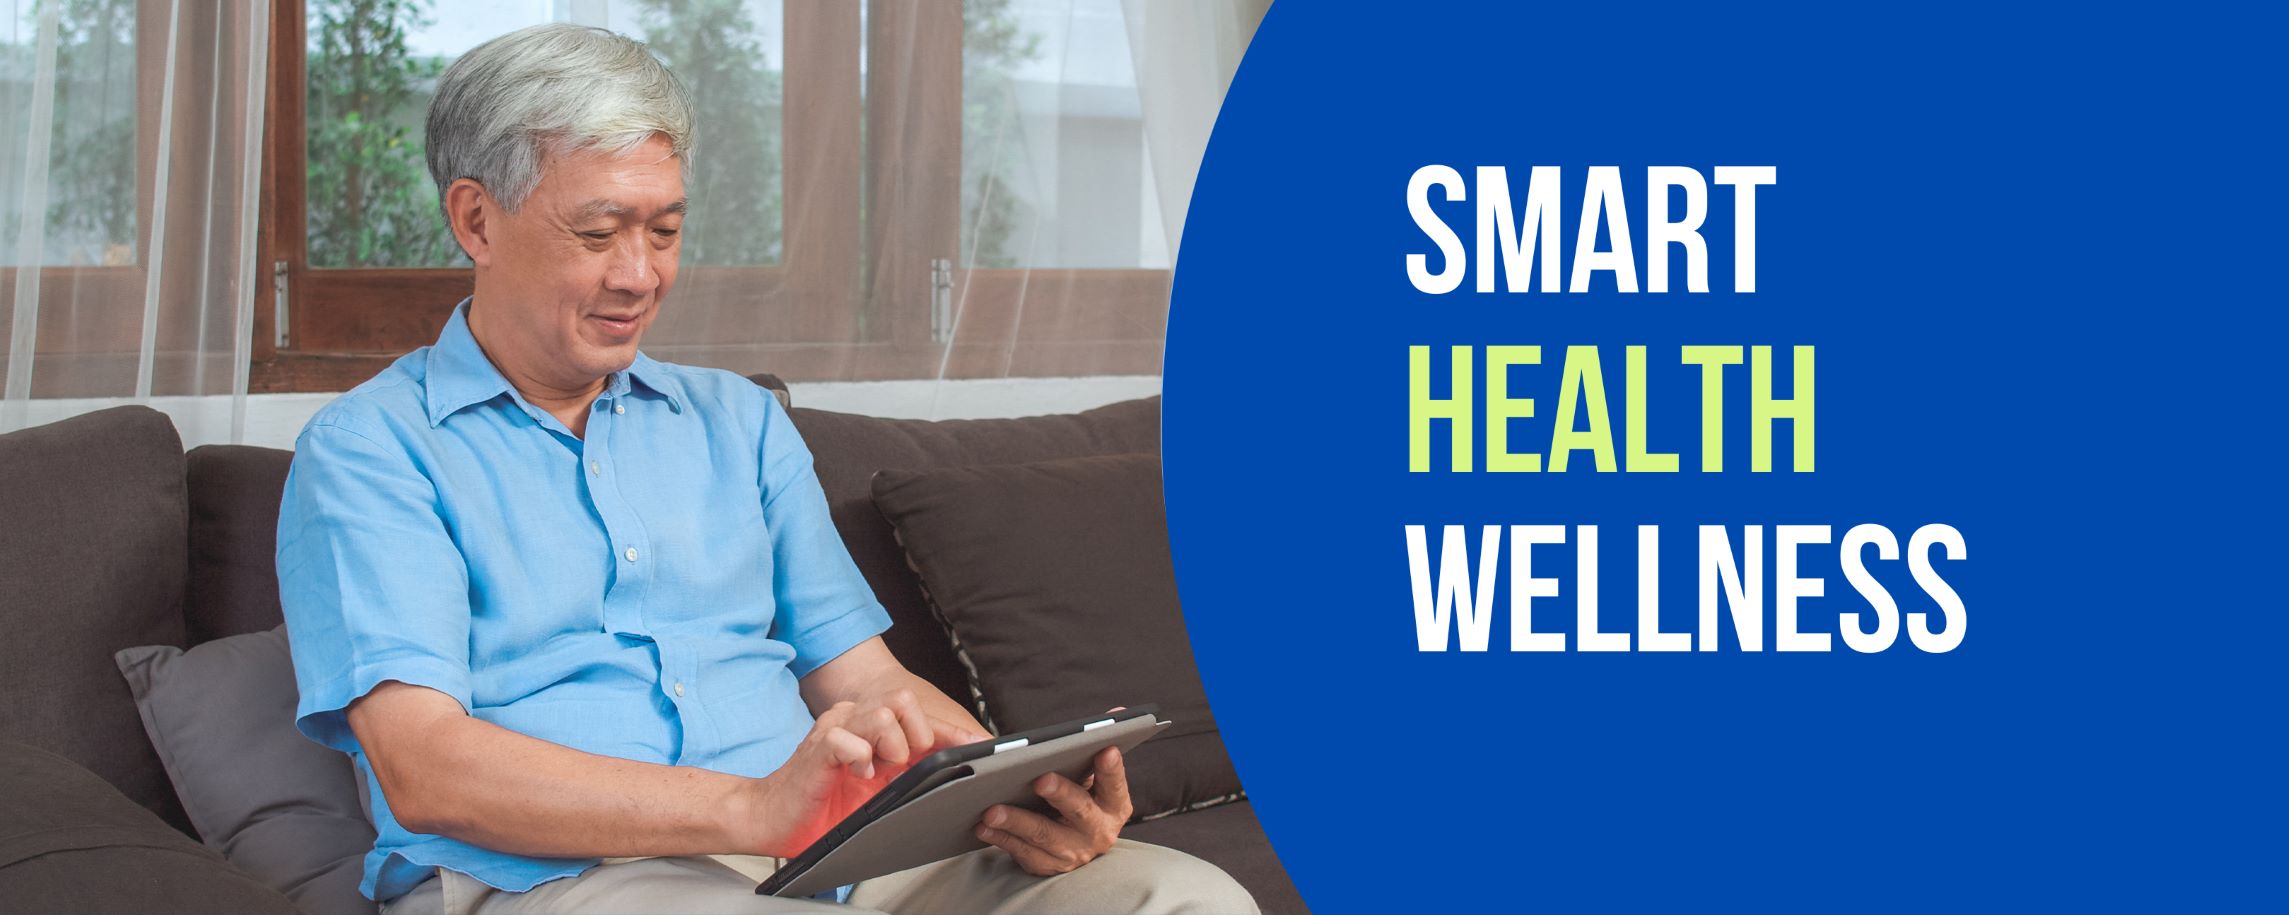 ตรวจสุขภาพสำหรับสุภาพบุรุษอายุ 50 ปีขึ้นไป Smart Health Wellness Male